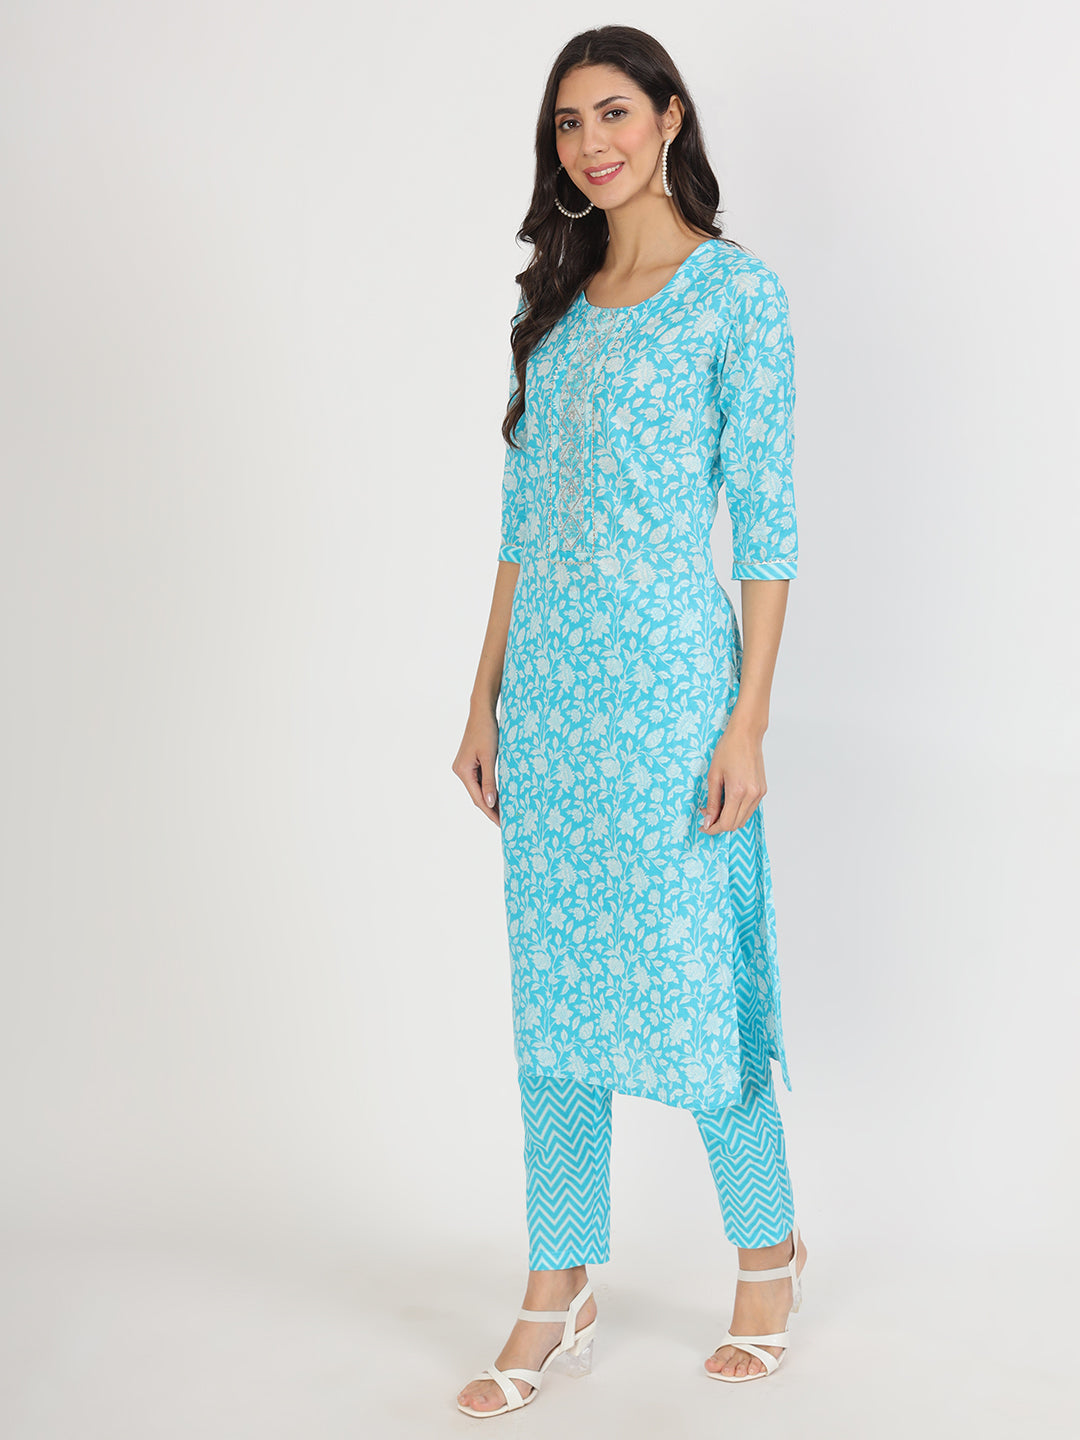 Divena turquoise blue Floral Print Cotton Kurta pants with Dupatta set for women